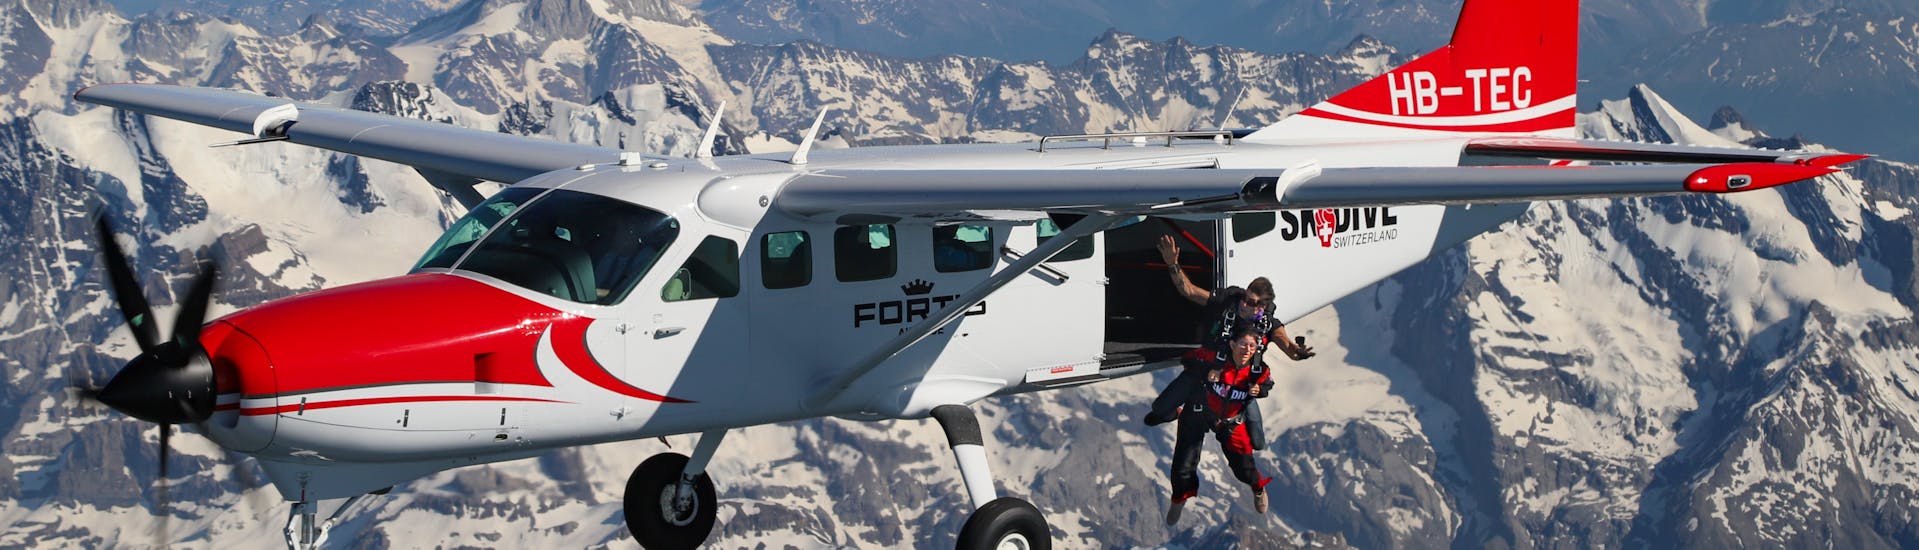 L'avion que nous utilisons lors du Saut en Parachute Tandem à Interlaken en Suisse (4000m) avec Skydive Switzerland.